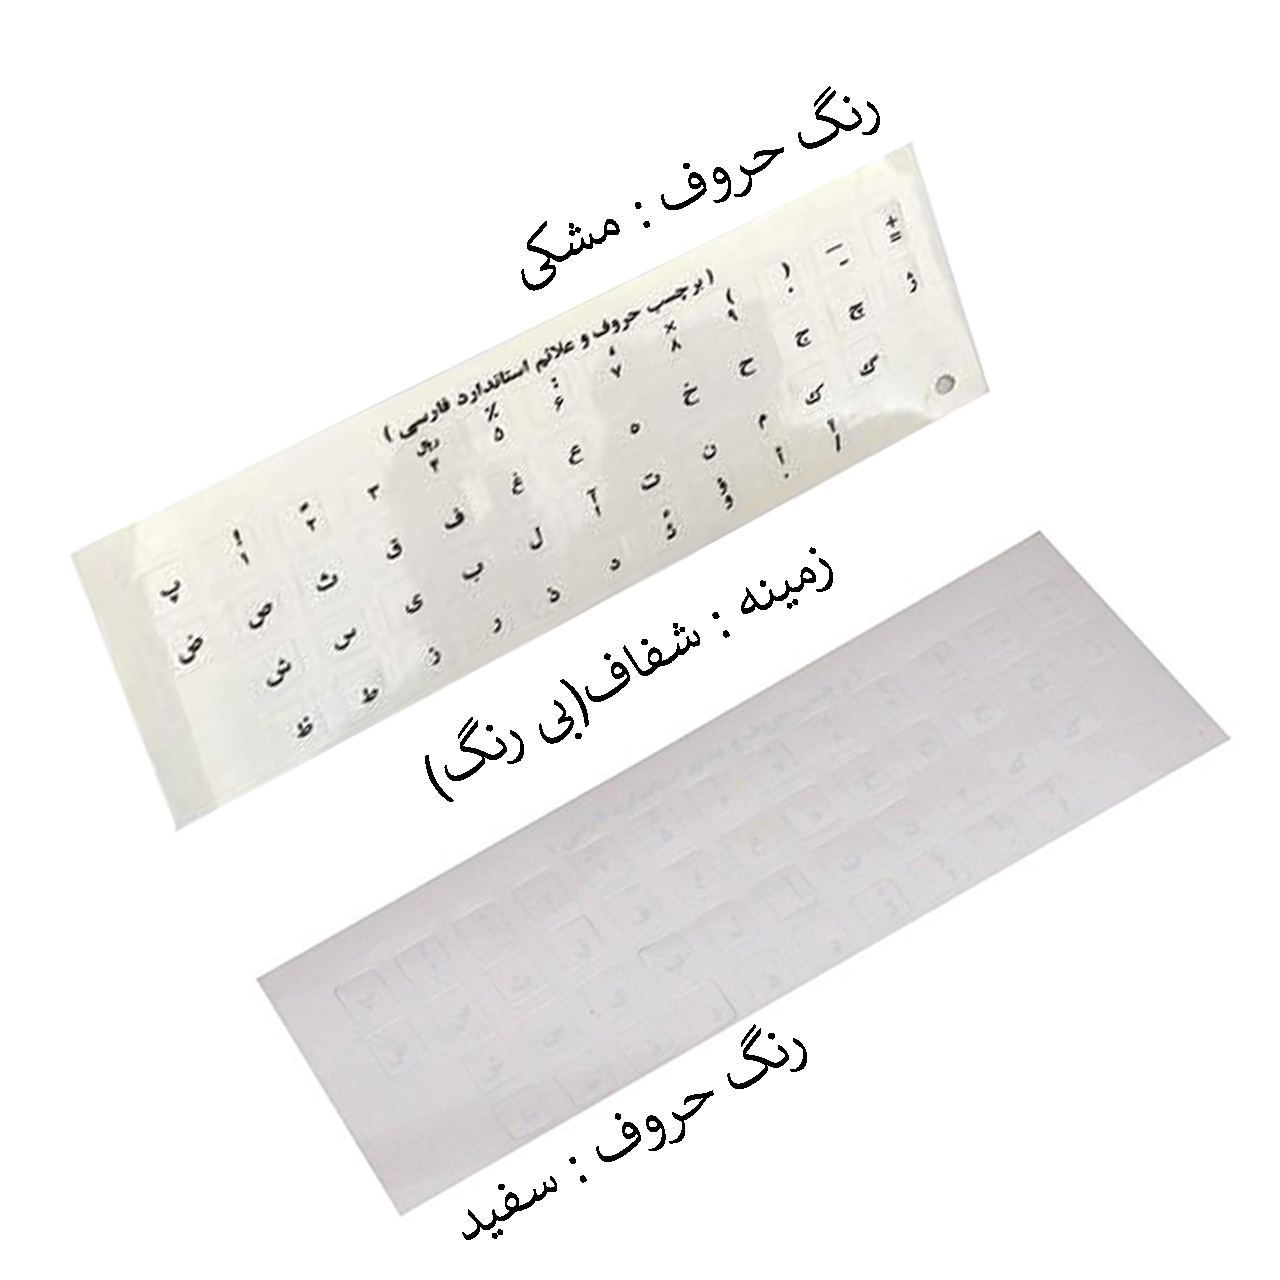 برچسب حروف فارسی کیبورد مدل 001 بسته دو عددی